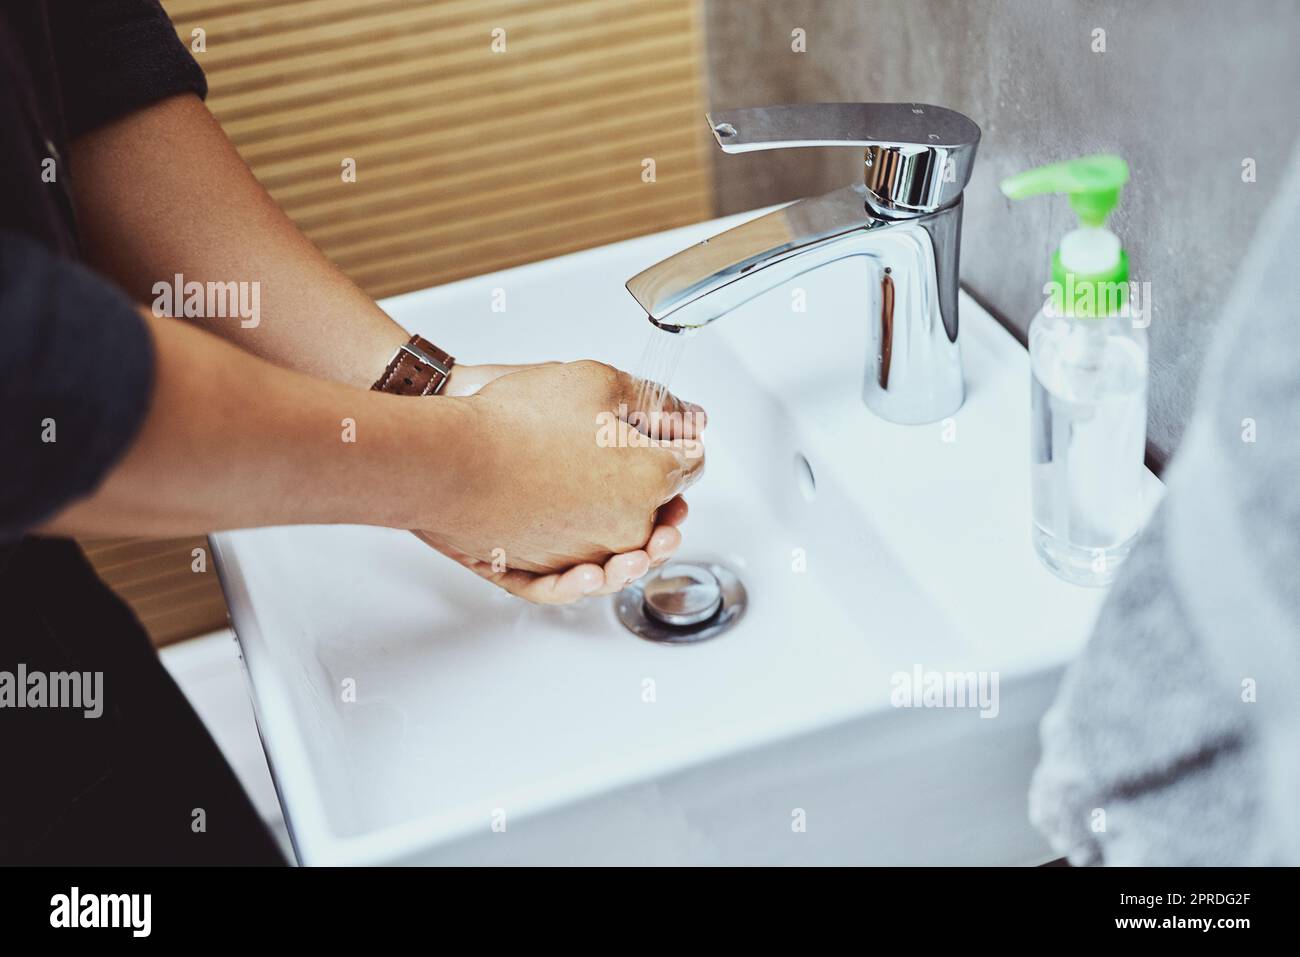 Die beste Abwehr gegen Keime. Ein unkennbarer Mann wascht sich die Hände im Waschbecken. Stockfoto